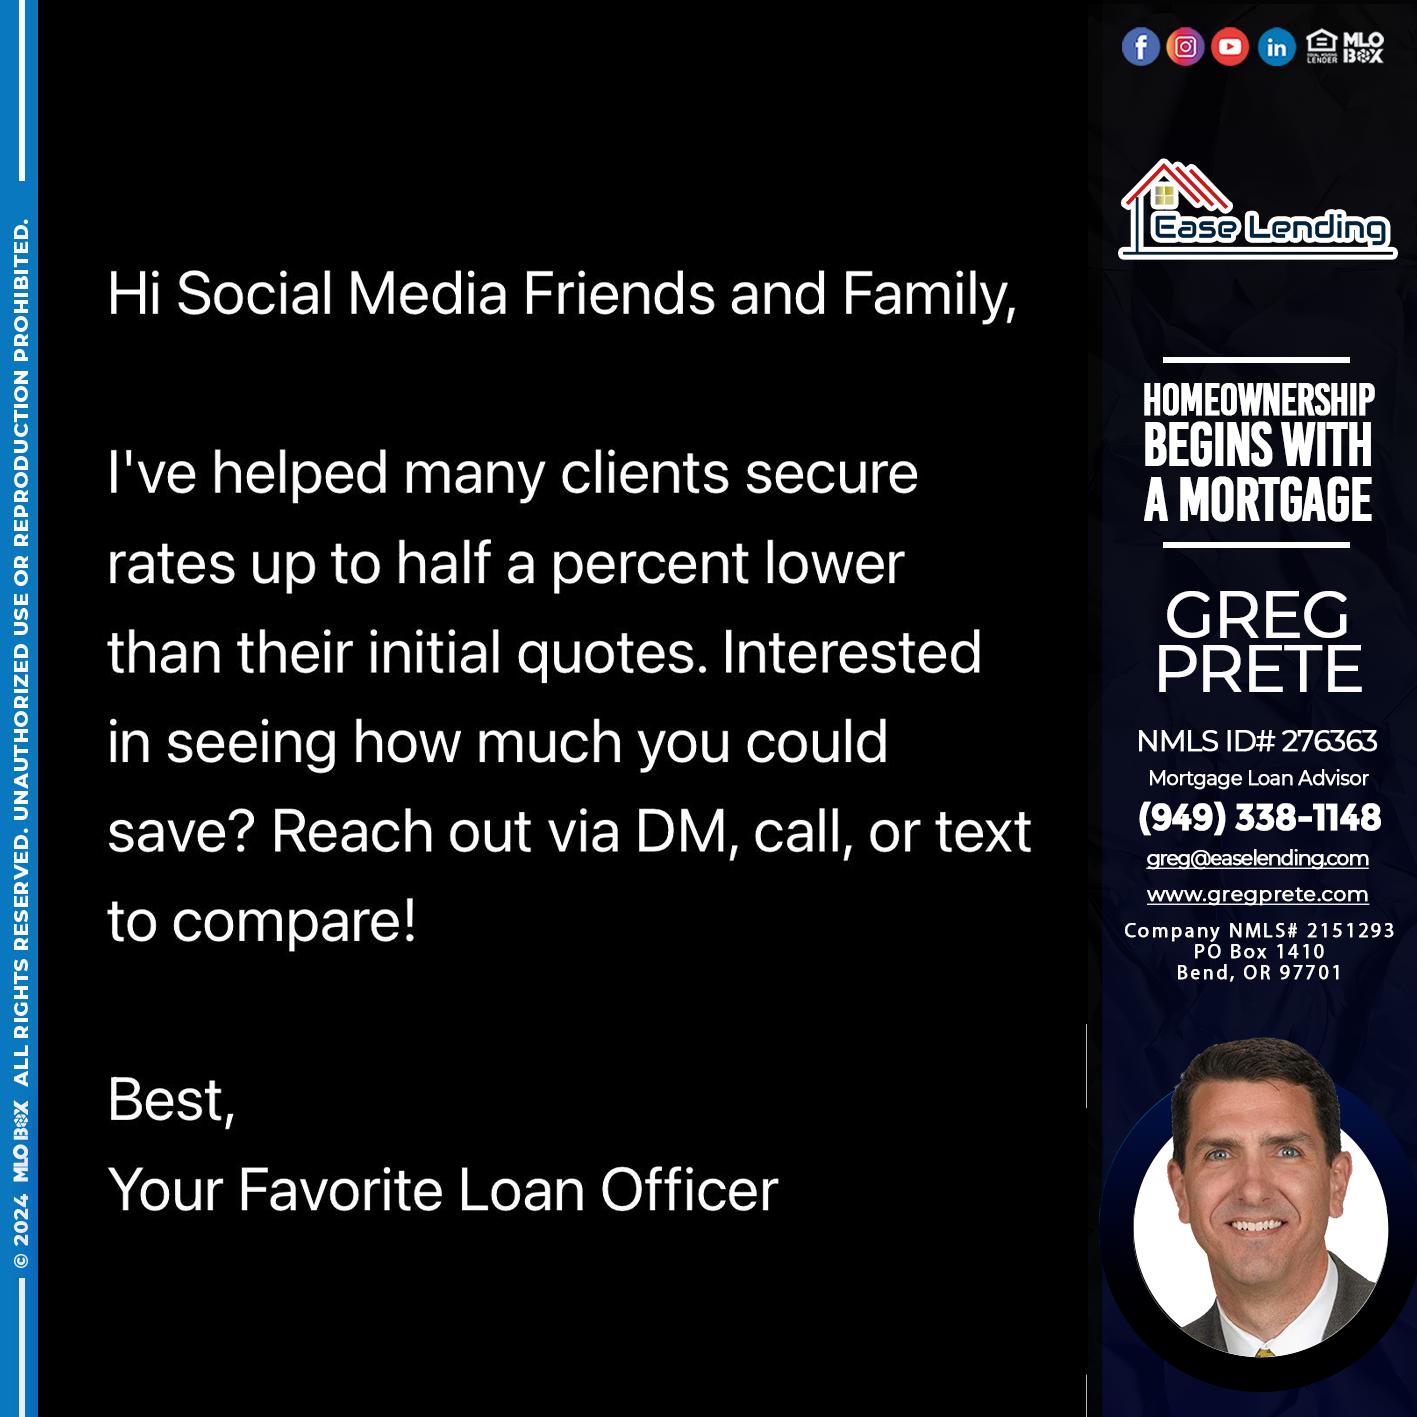 HOI SOCIAL MEDIA - Greg Prete -Licensed Loan Advisor